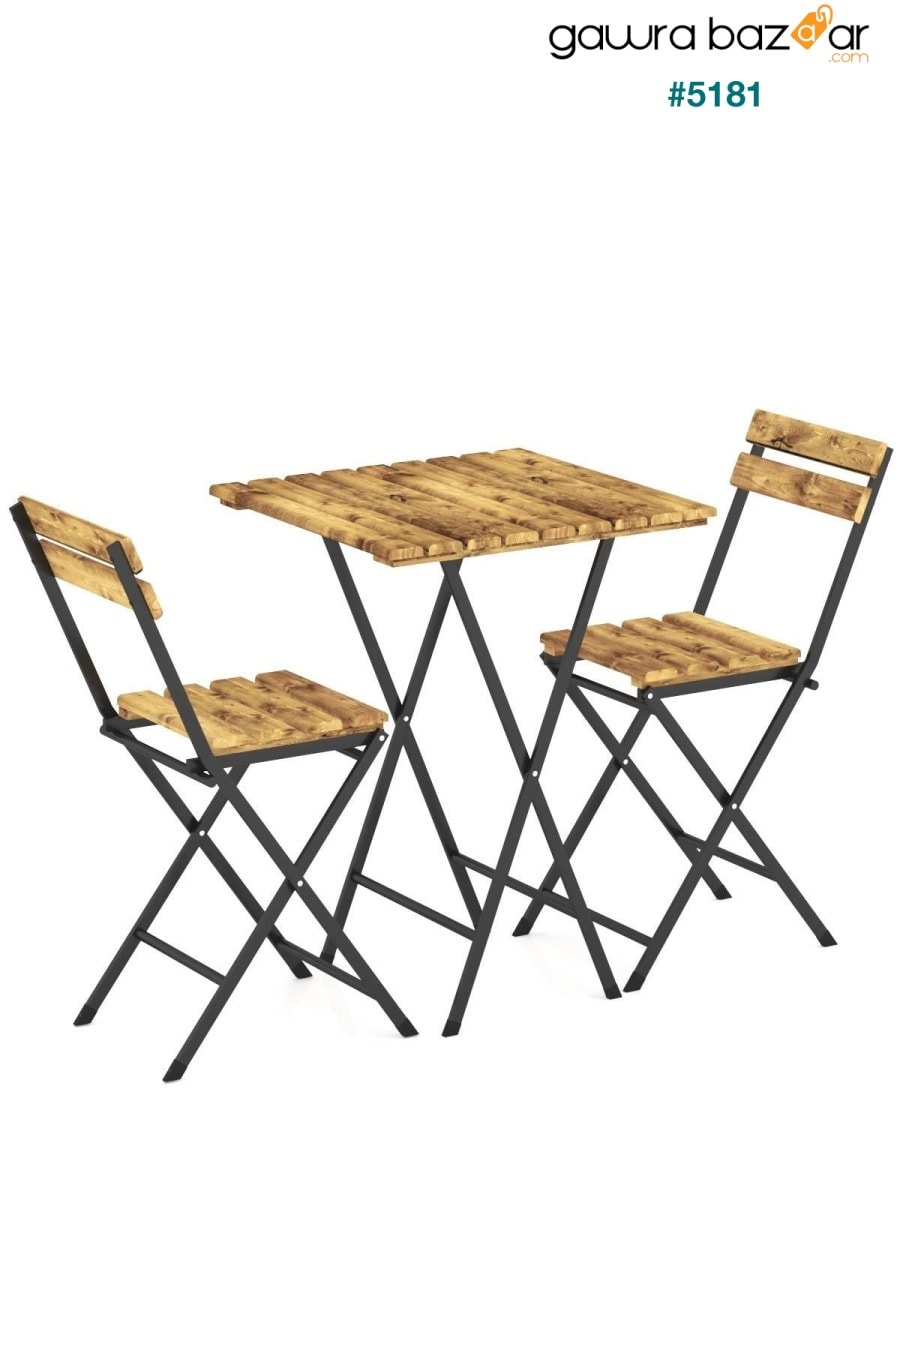 طقم كرسي طاولة بيسترو مصنوع من الخشب الطبيعي المطلي بهيكل معدني مطلي للحديقة والشرفات الصغيرة DEHALİMİTED 2